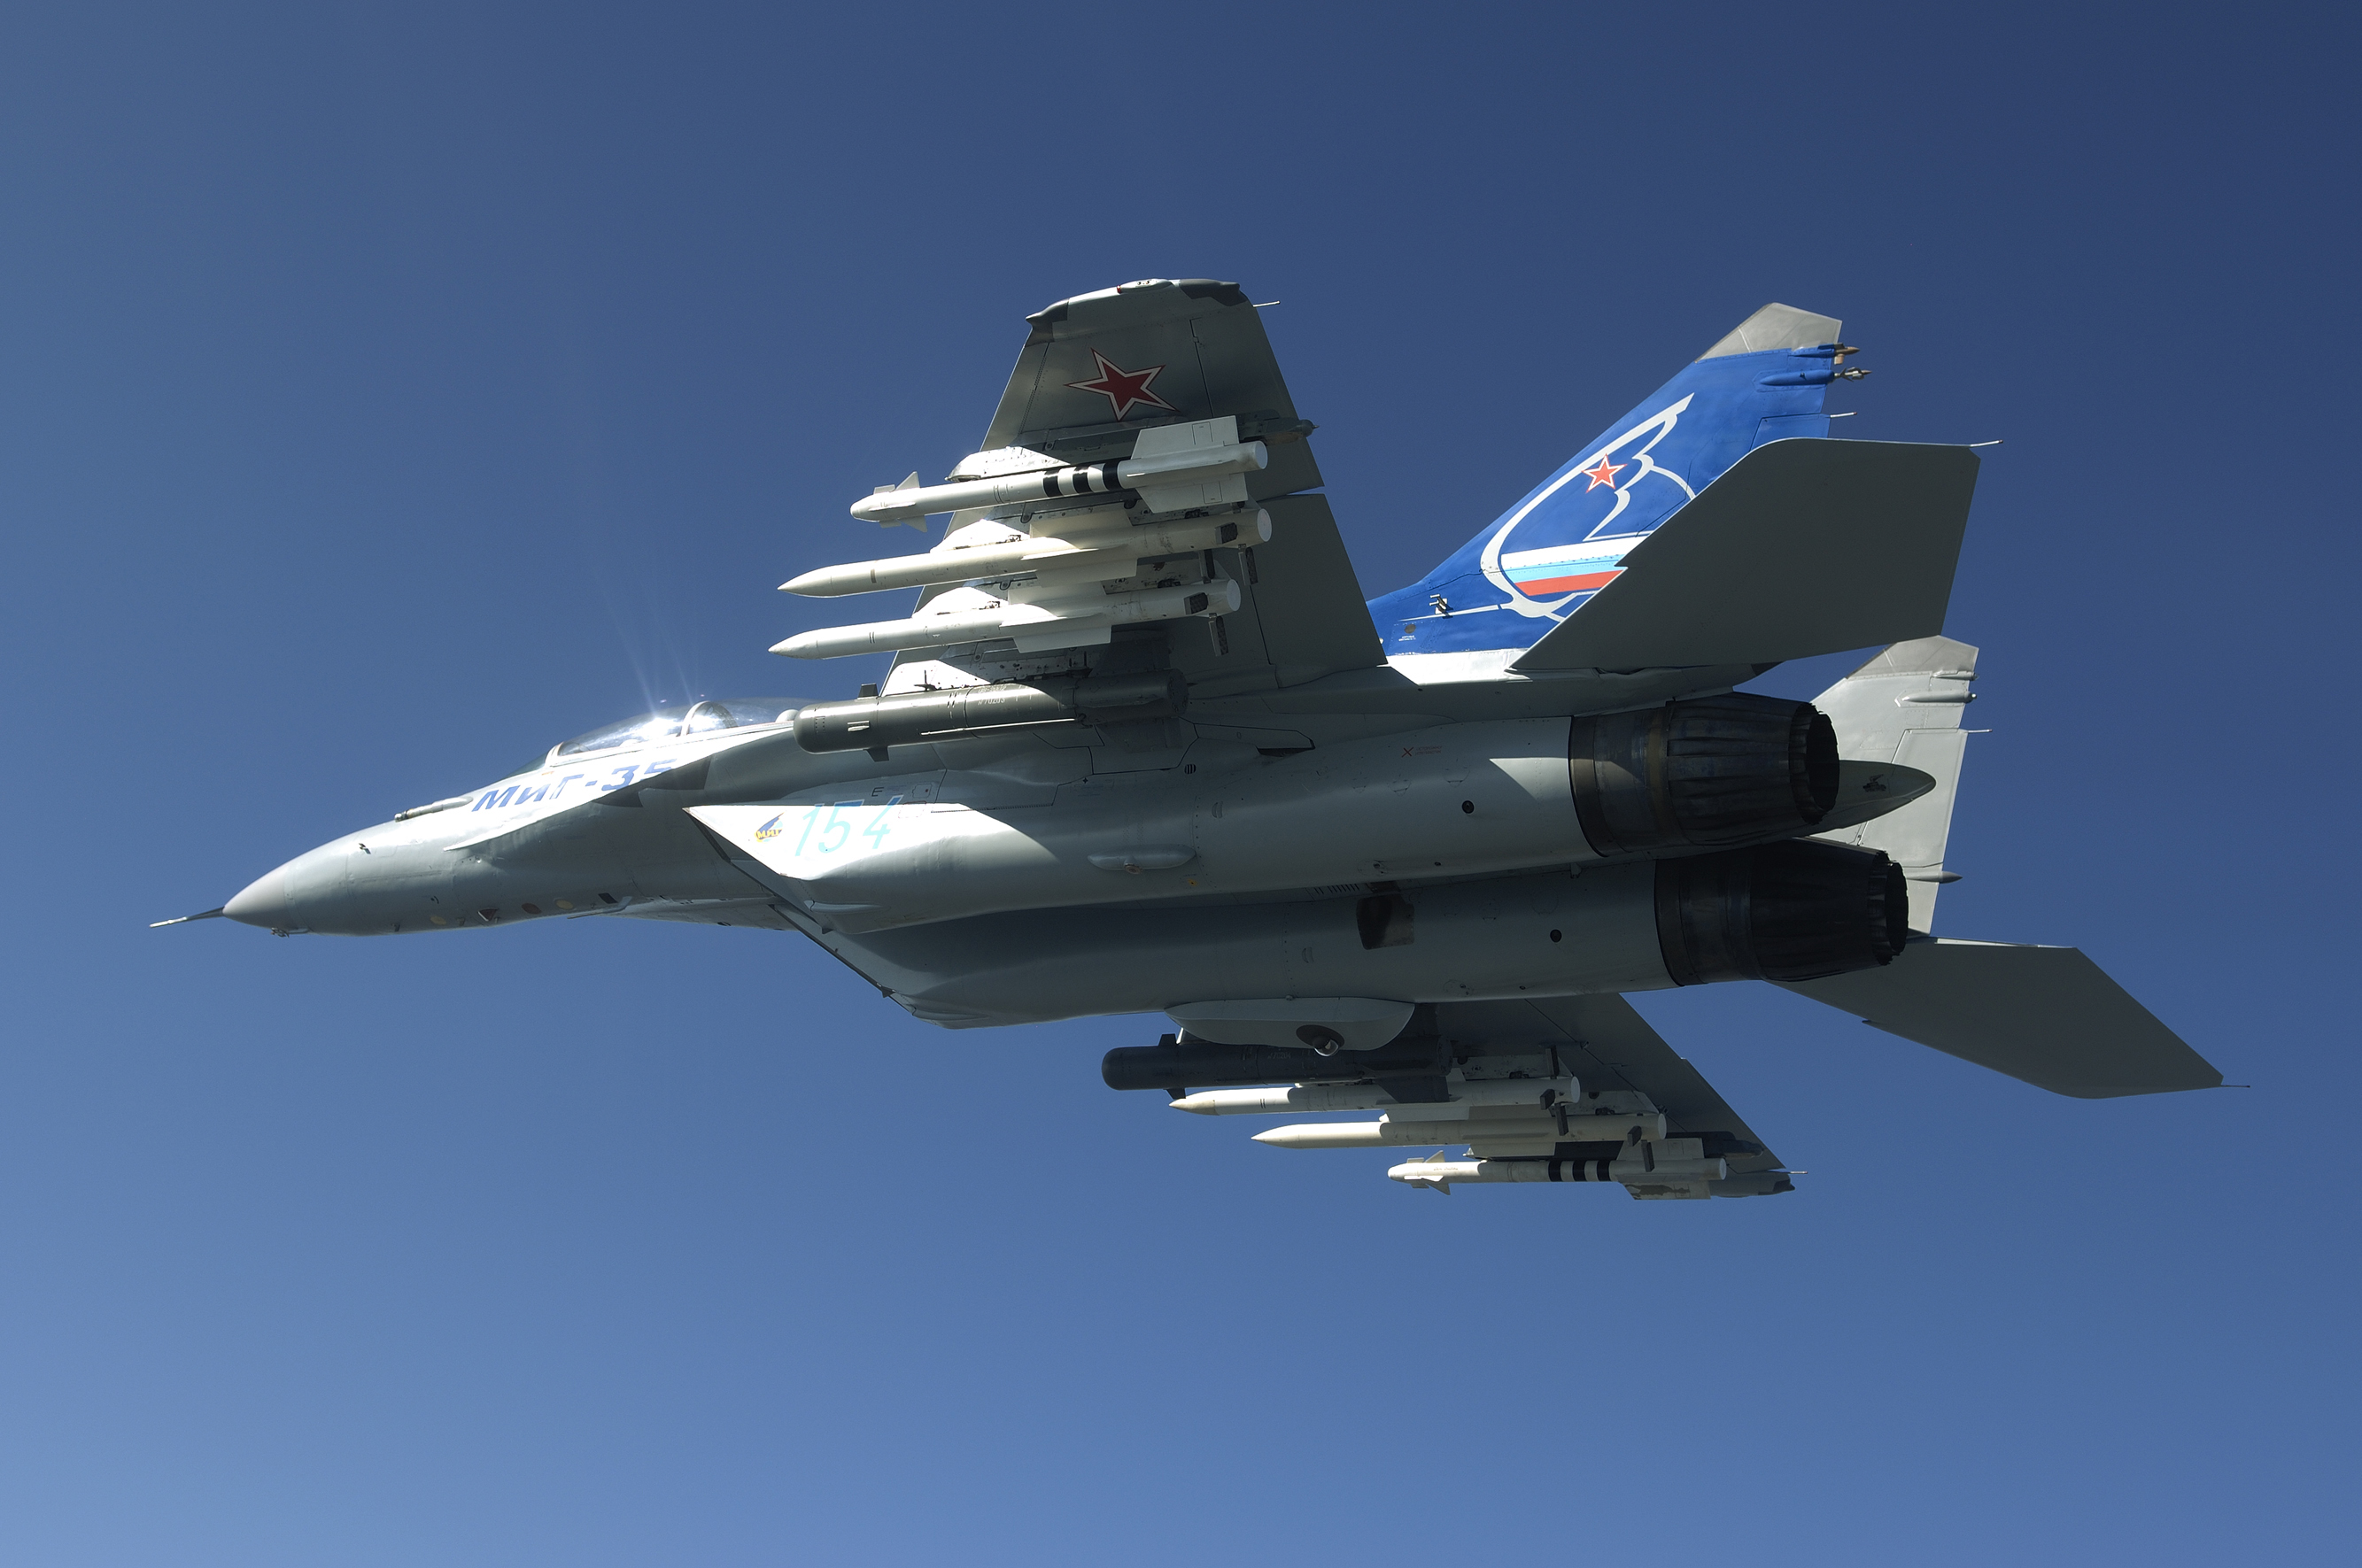 Mới đây, Trưởng phòng thiết kế của Tập đoàn Chế tạo Máy bay Thống nhất Nga - ông Sergei Korotkov từng cho biết, hệ thống radar của chiến đấu cơ tối tân nhất của Nga - Mikoyan MiG-35 có khả năng truy lùng tới 30 mục tiêu cùng một lúc.